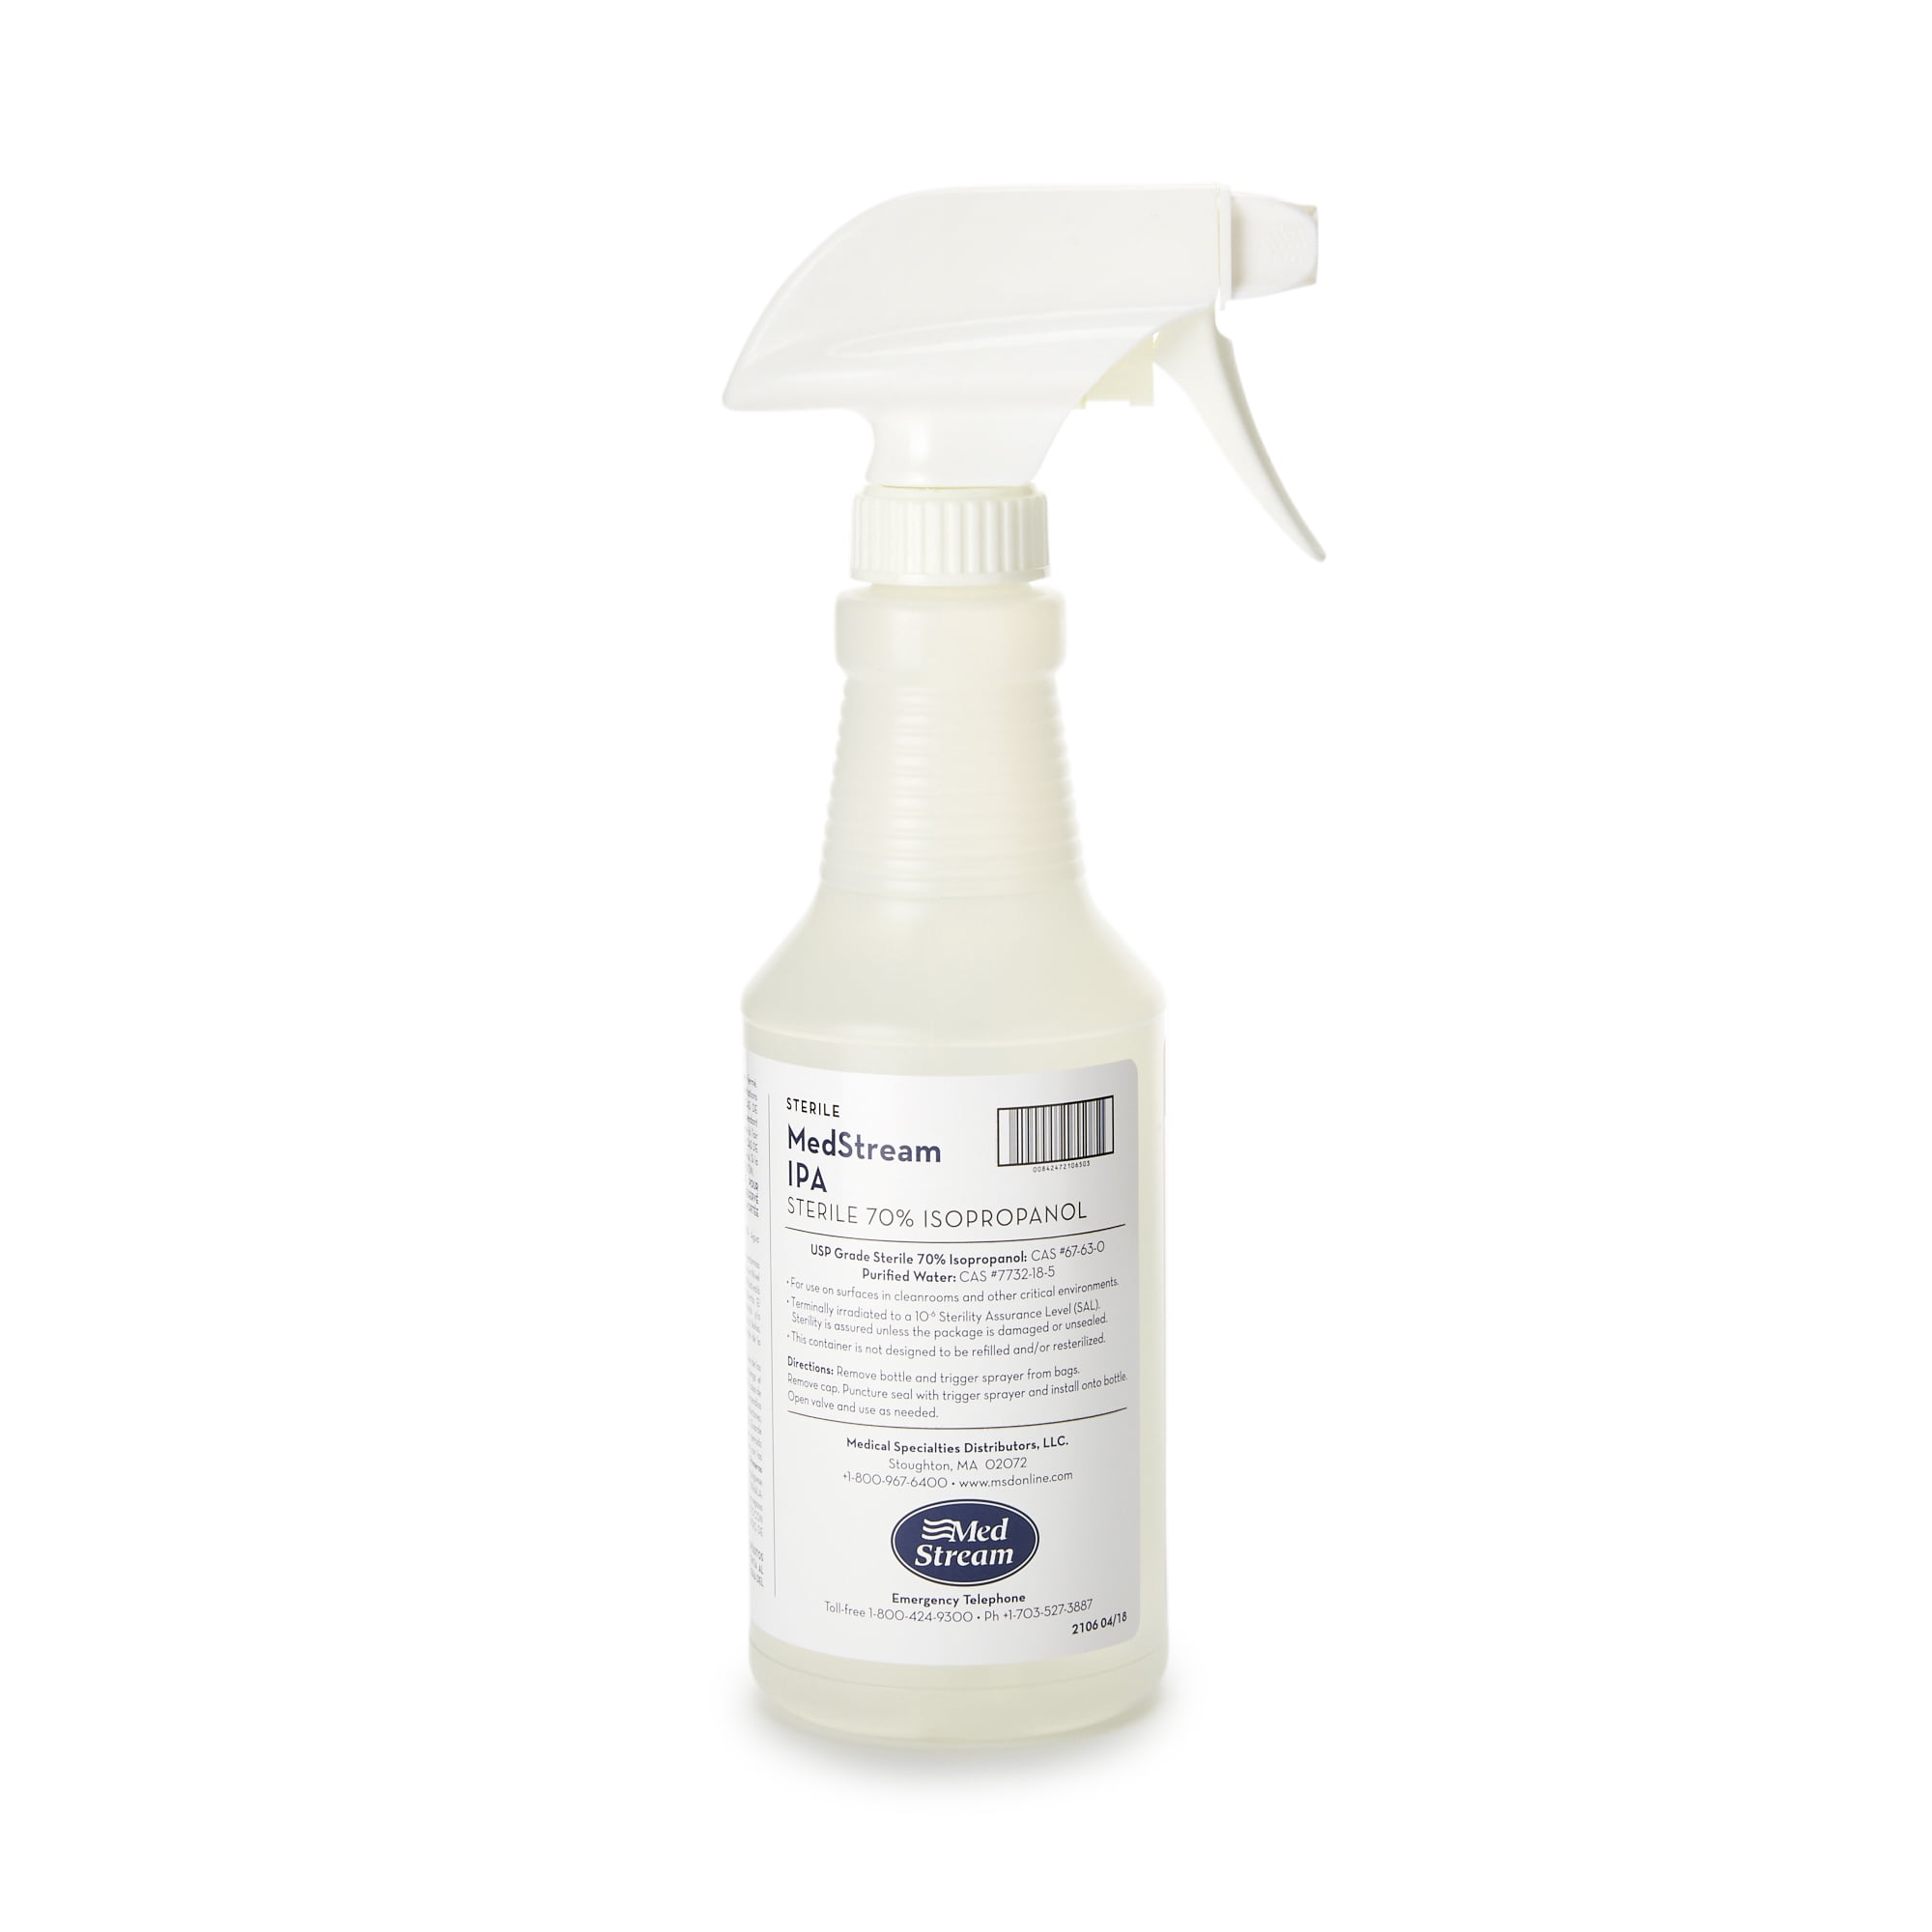 Lysol 24 oz. Power Foam Aerosol Bathroom Cleaner 19200-02569 - The